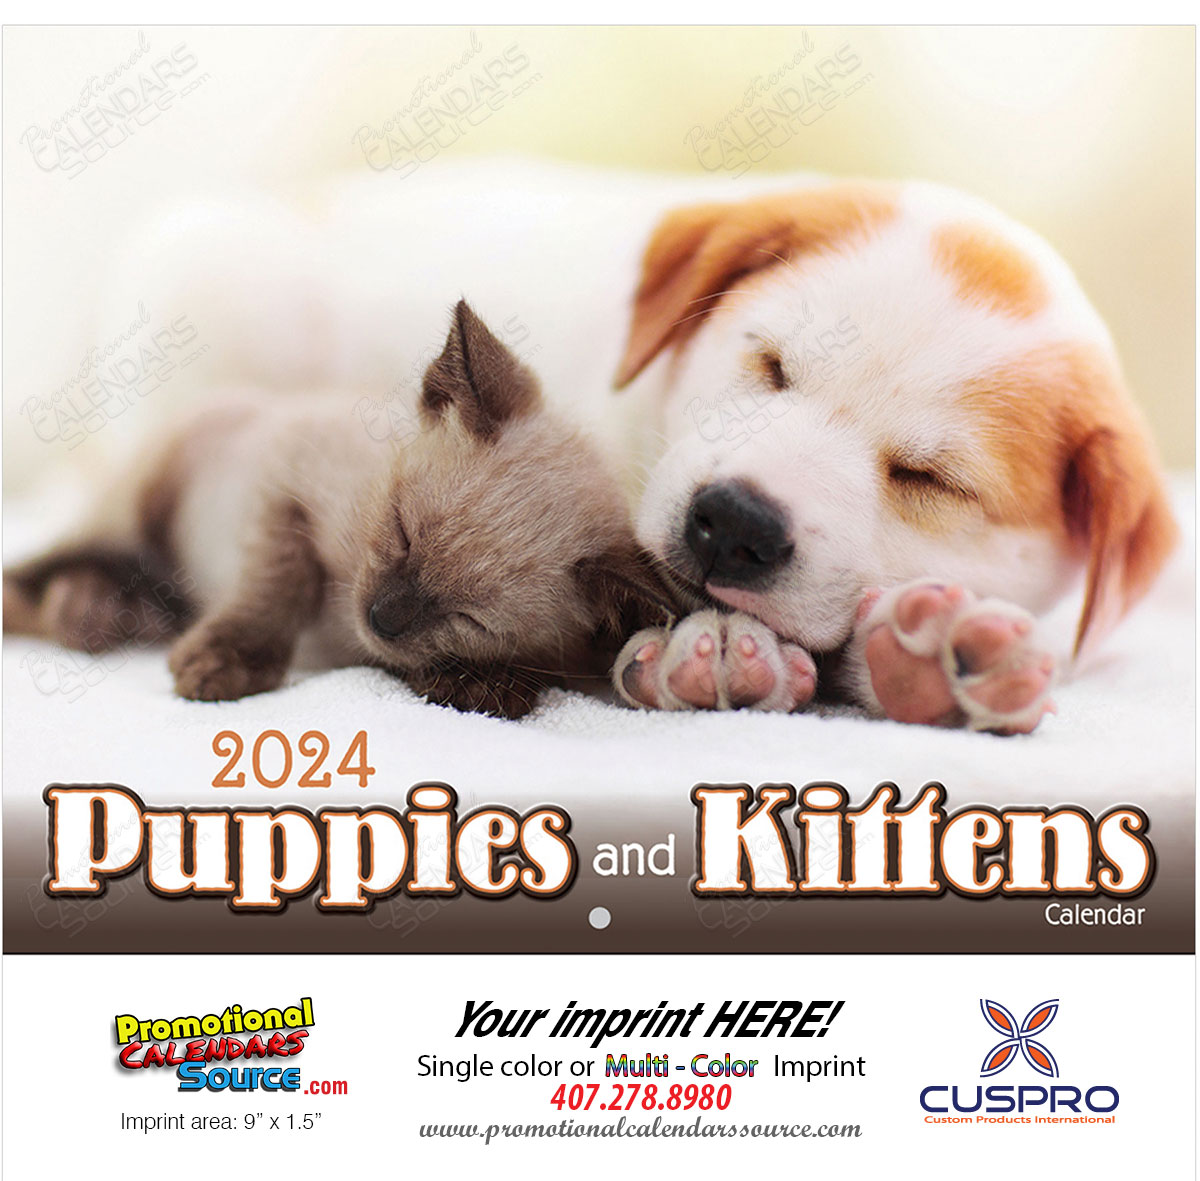 Puppies & Kittens Promotional Calendar 